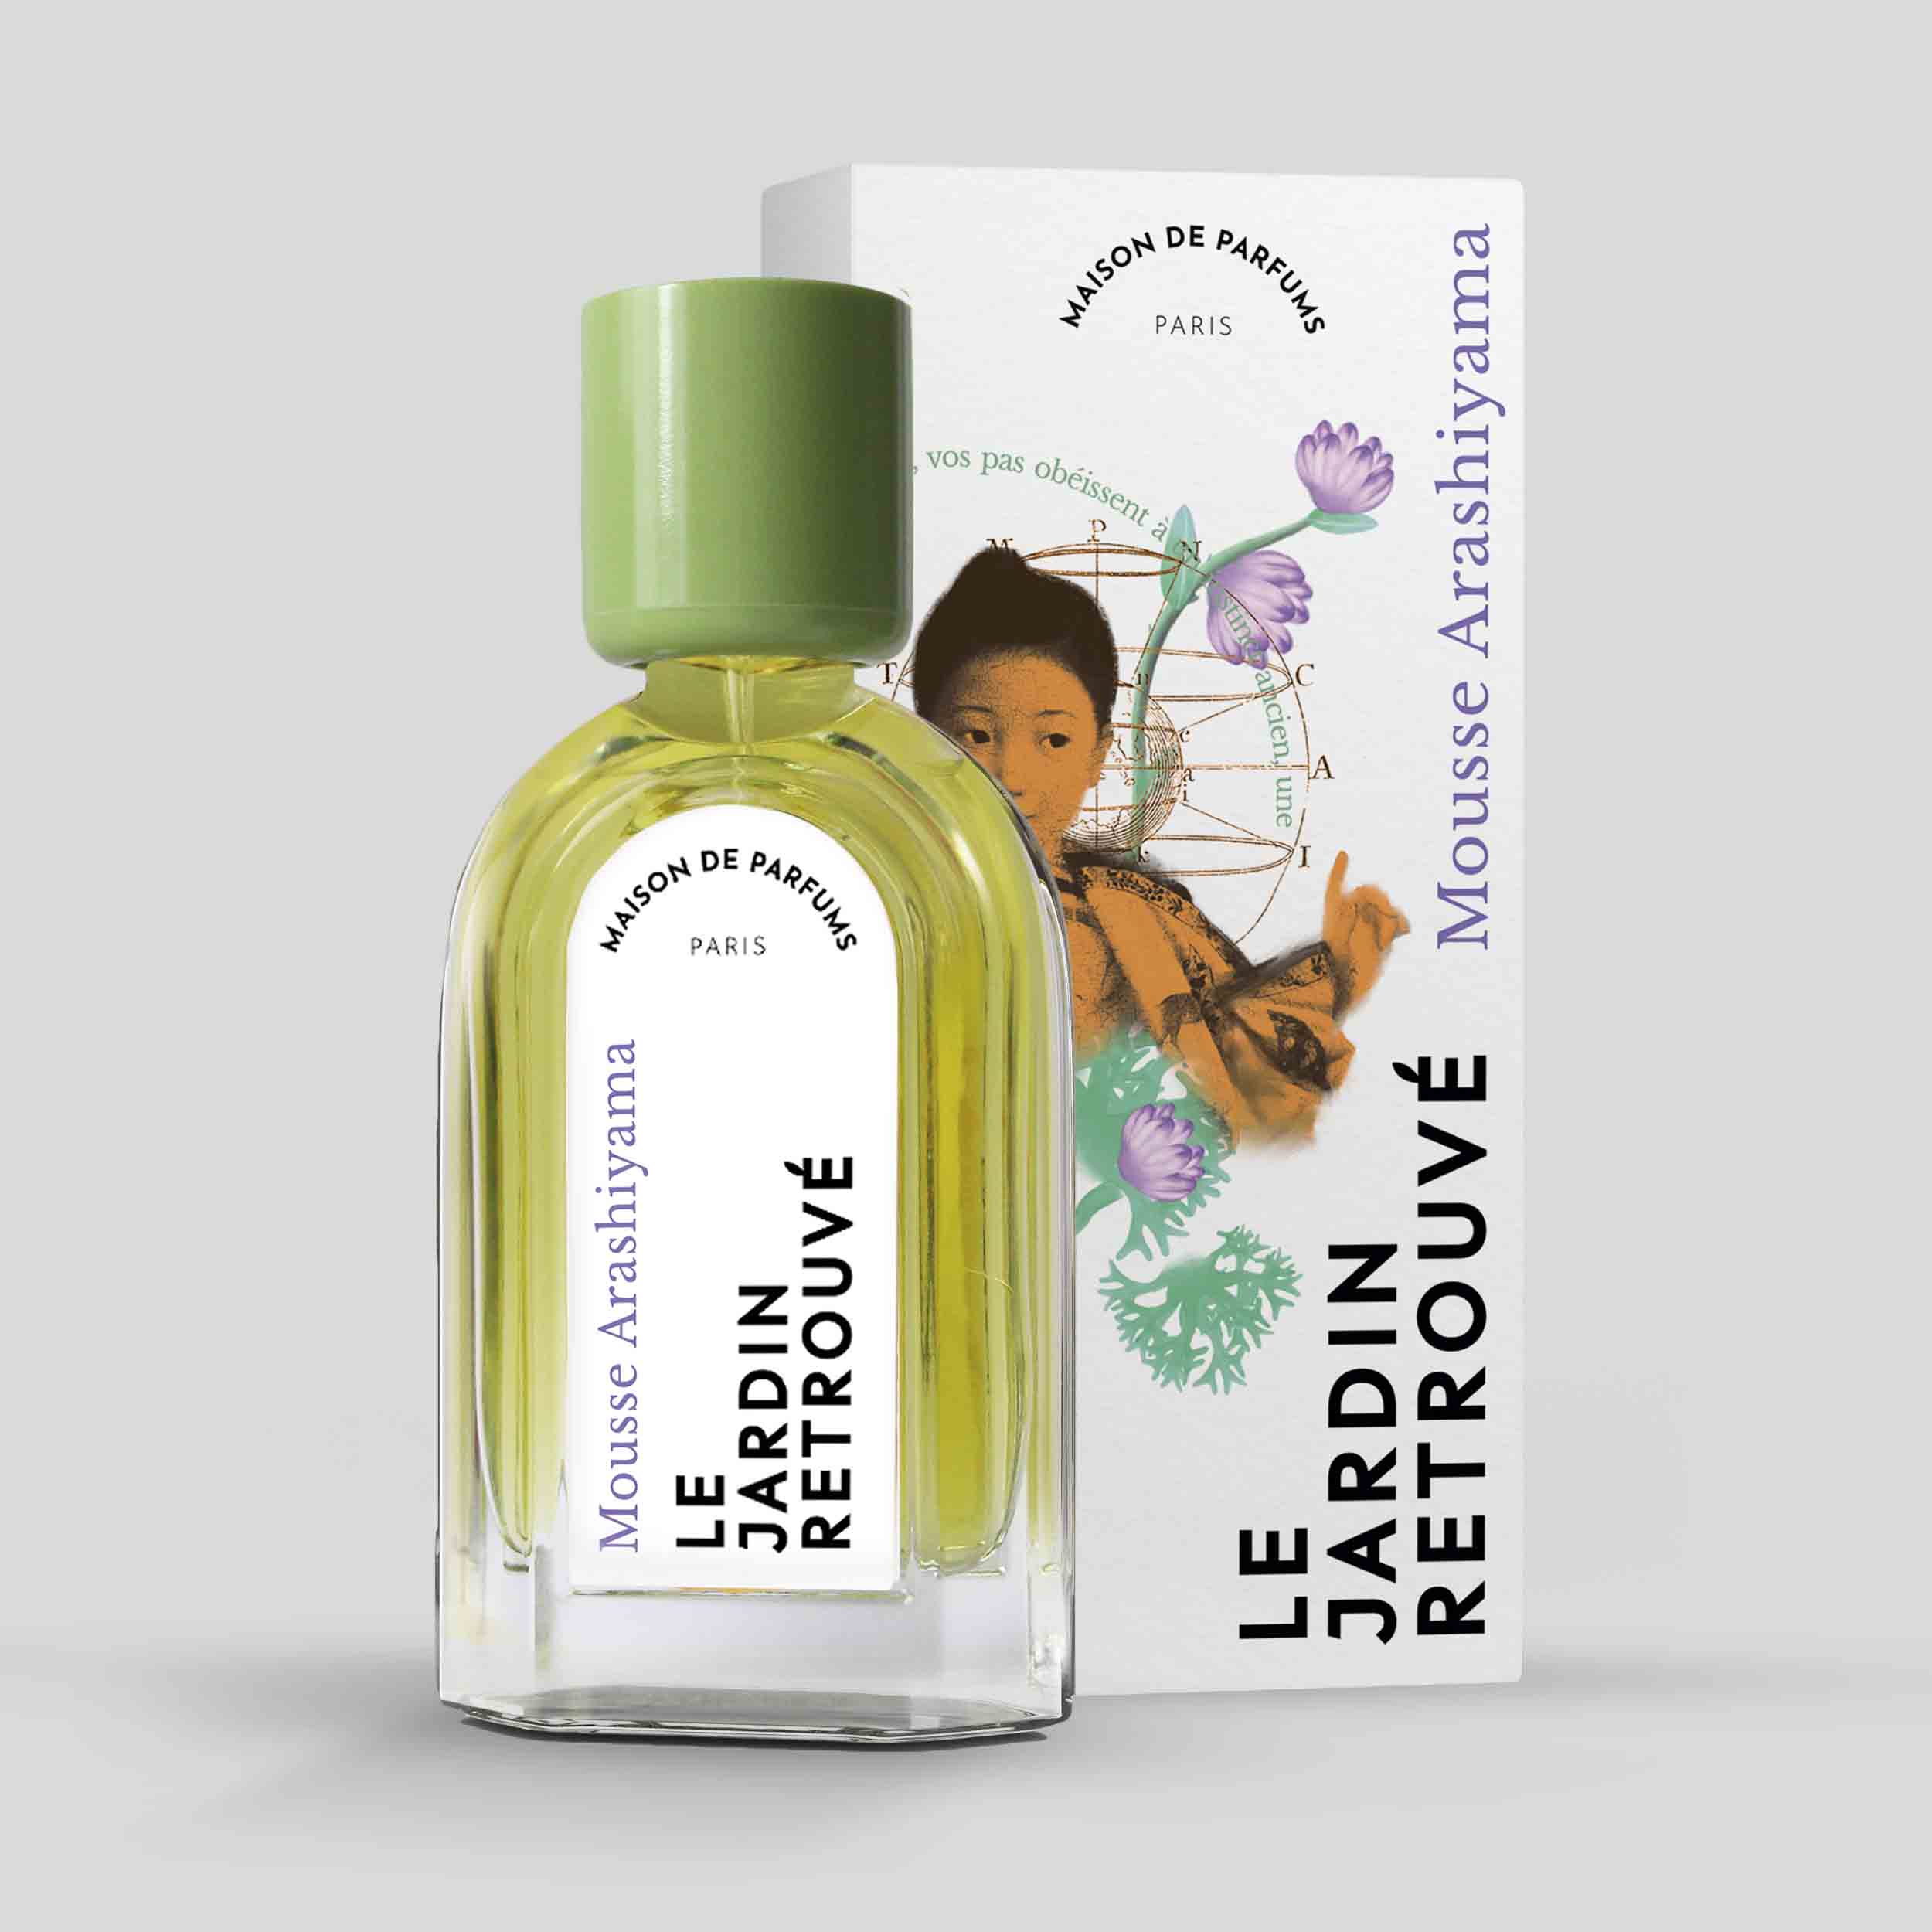 Mousse Arashiyama Eau de Parfum 50ml Bottle and Box by Le Jardin Retrouvé